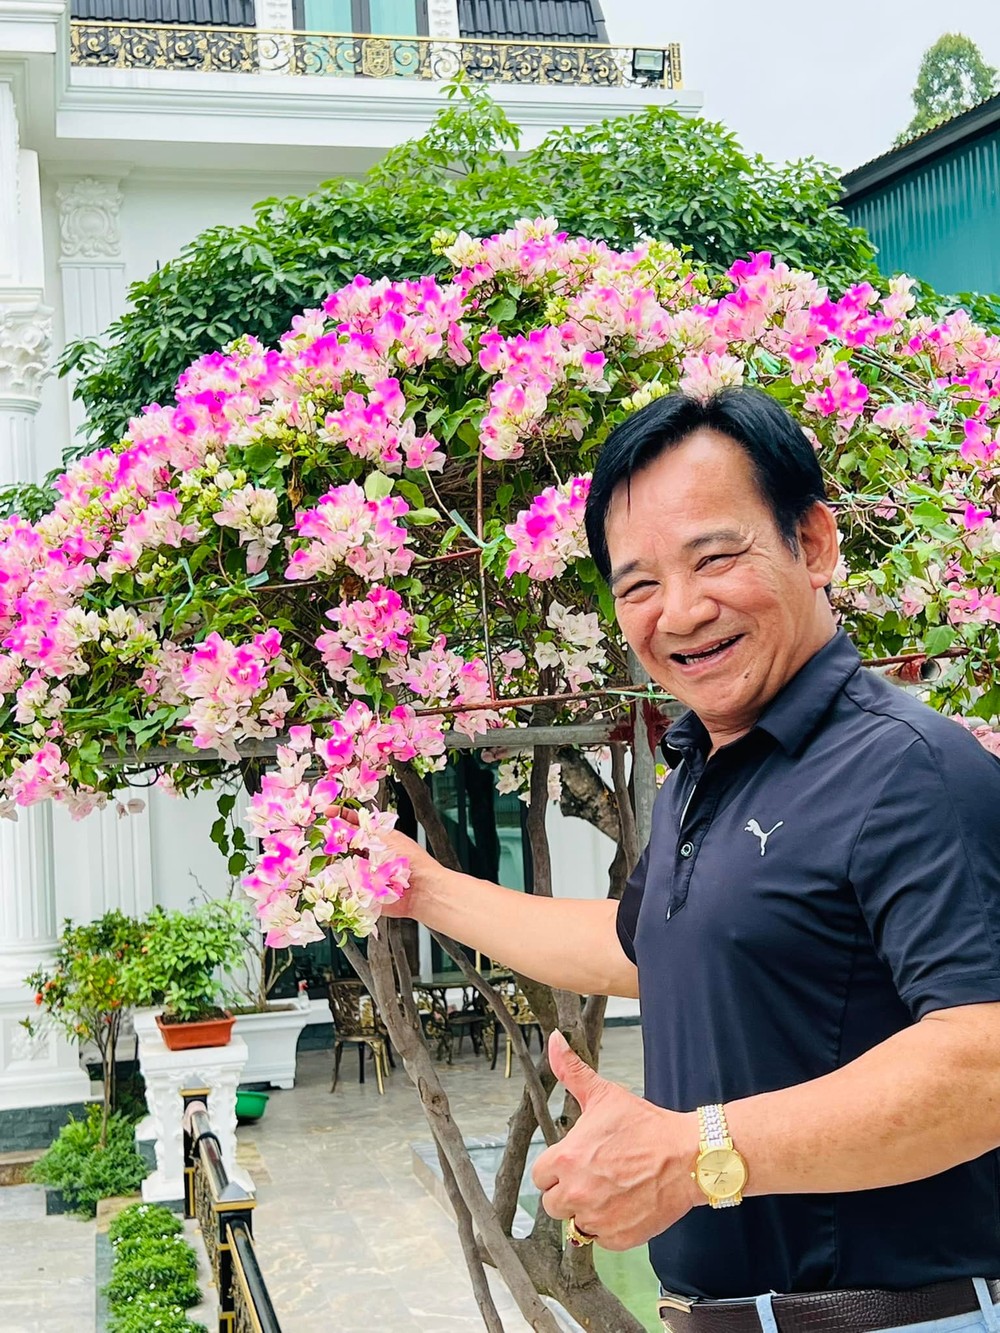 NSƯT Quang Tèo ở tuổi 60: Cuộc sống viên mãn, bận rộn những ngày giáp Tết - Ảnh 1.